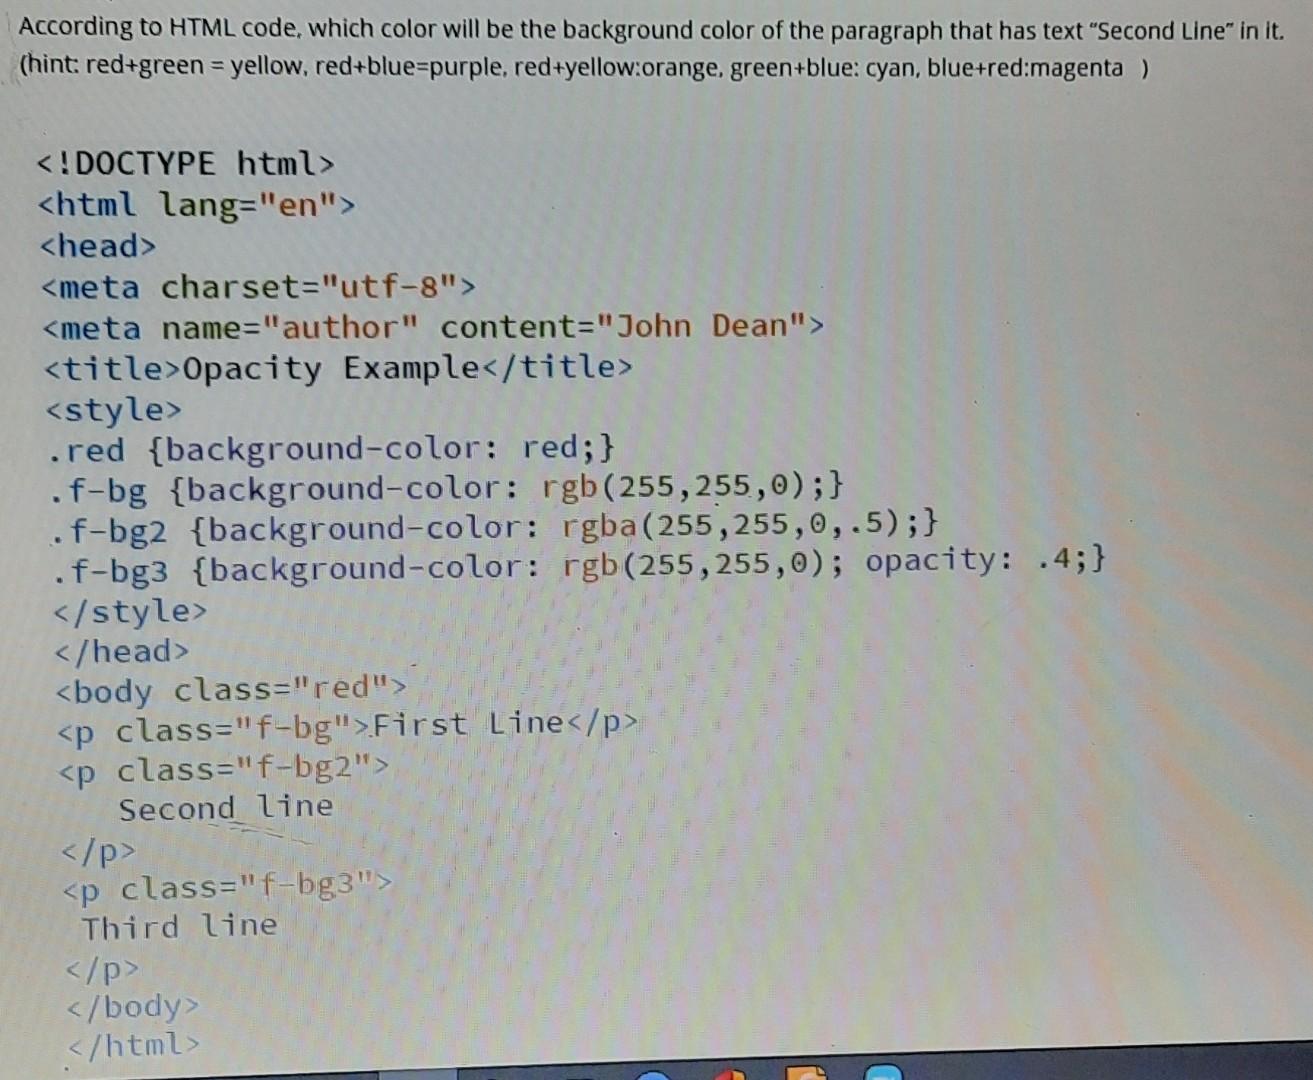 Mã màu HTML và màu tương ứng (According to HTML code, which color will be - Chegg.com): Bạn có biết rằng mã màu HTML sẽ tạo ra màu gì trên trang web của bạn? Hãy truy cập trang web của chúng tôi để biết thêm thông tin chi tiết về mã màu HTML và màu tương ứng. Với những kiến thức này, bạn sẽ biết cách sử dụng mã màu HTML để tạo ra trang web tuyệt đẹp và thu hút người dùng.